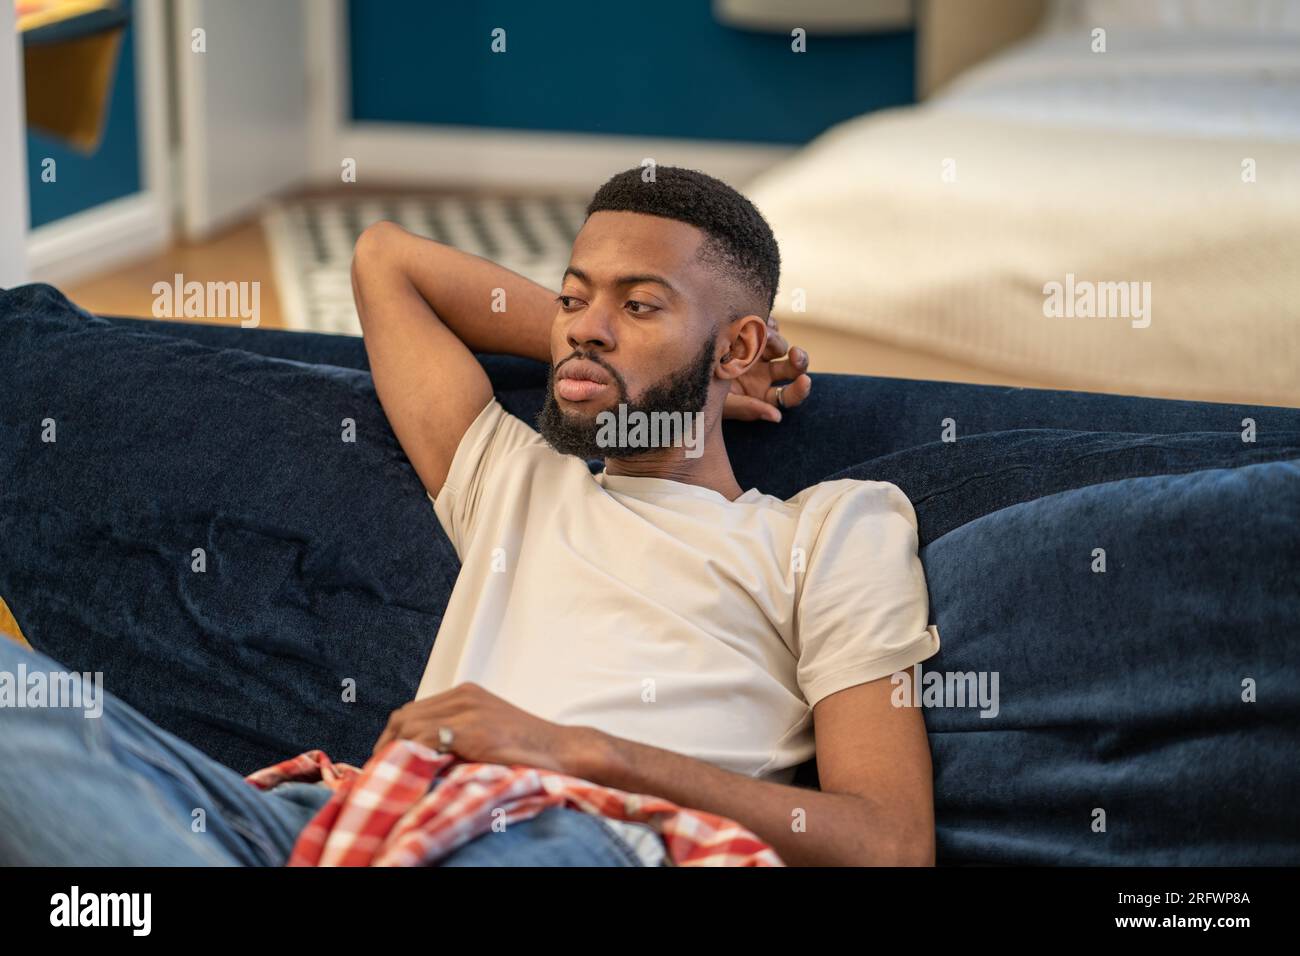 Il ragazzo afro-americano sognante e premuroso siede su divani appoggiati nel monolocale. Foto Stock